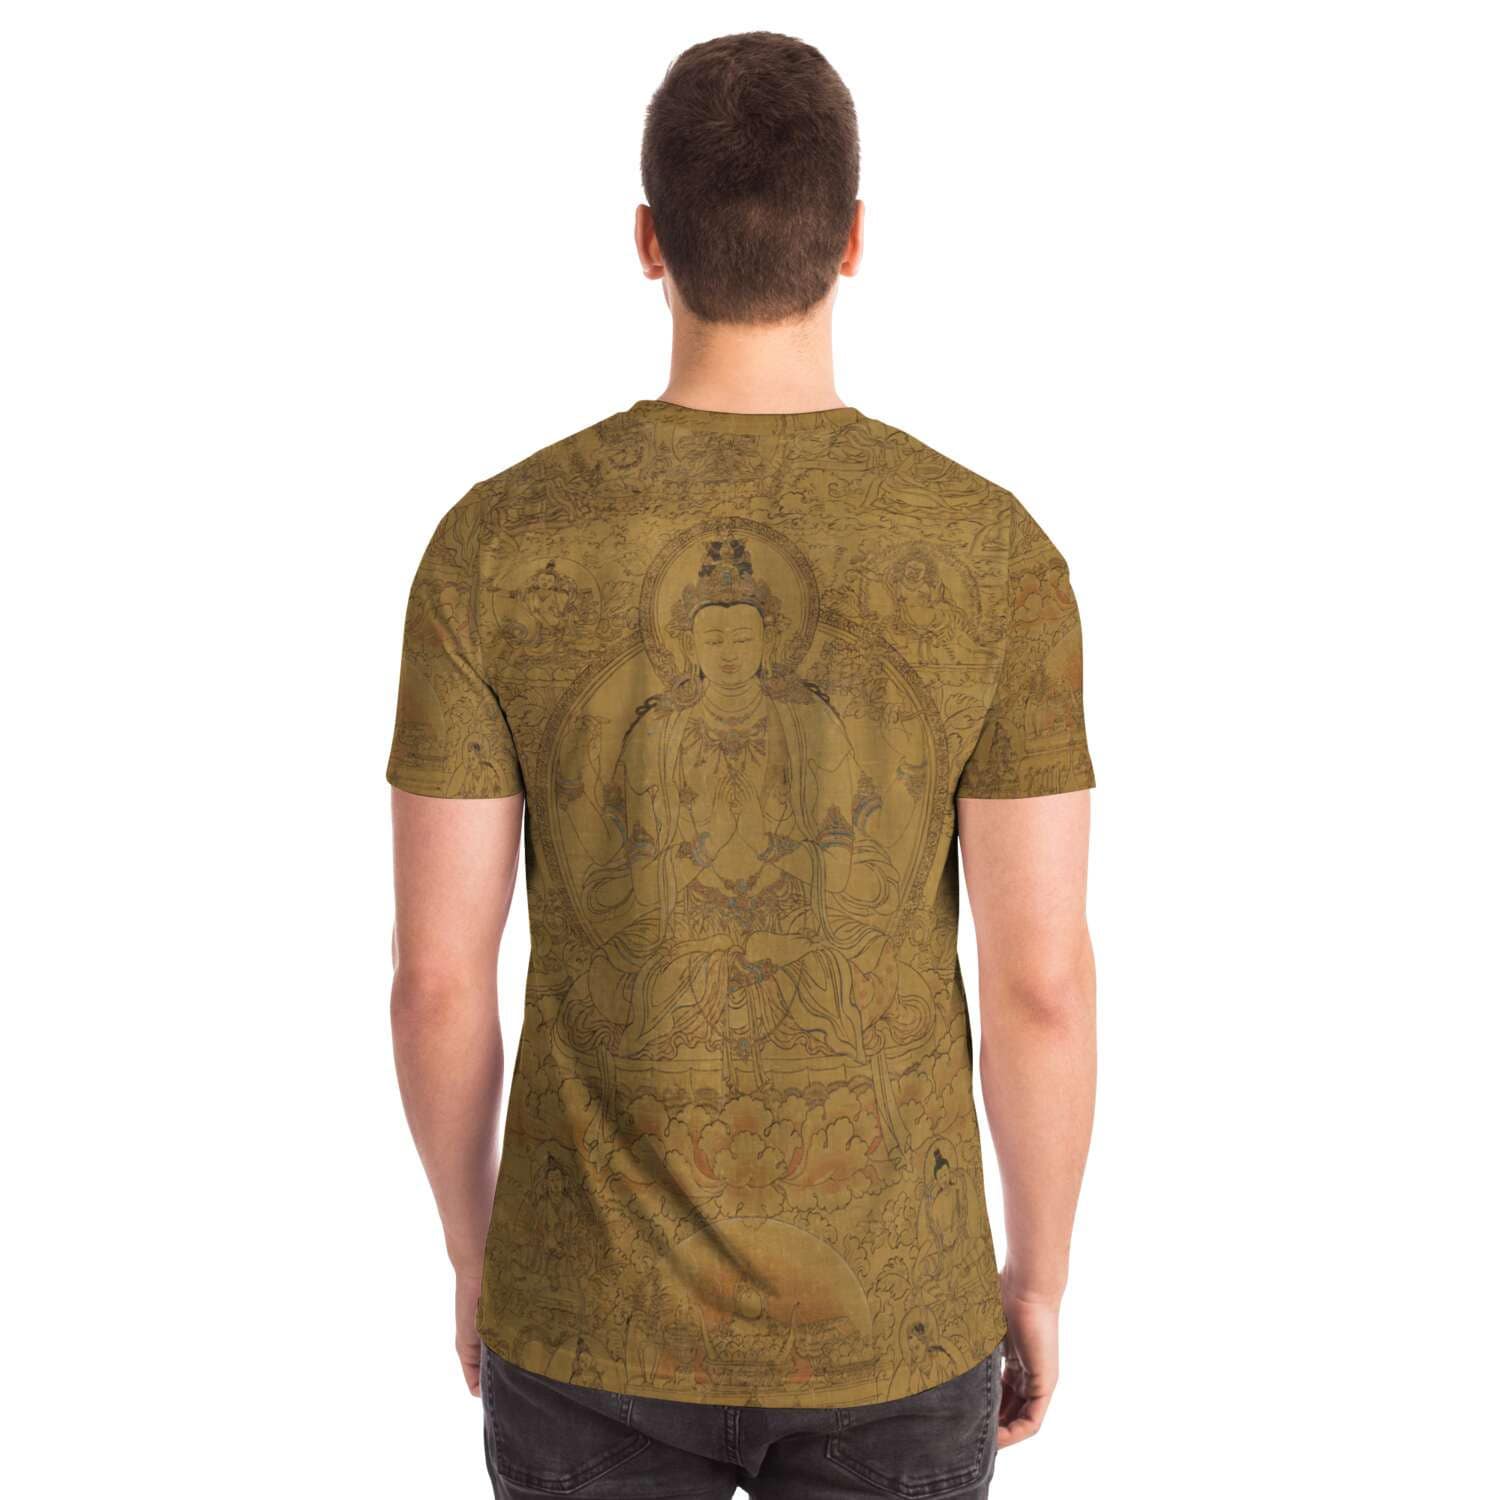 T-shirt Gold Avalokiteshvara, Tibetan Buddha Dalai Lama Incarnation, Reincarnation, Om Mantra Padme Hum Graphic Art T-Shirt